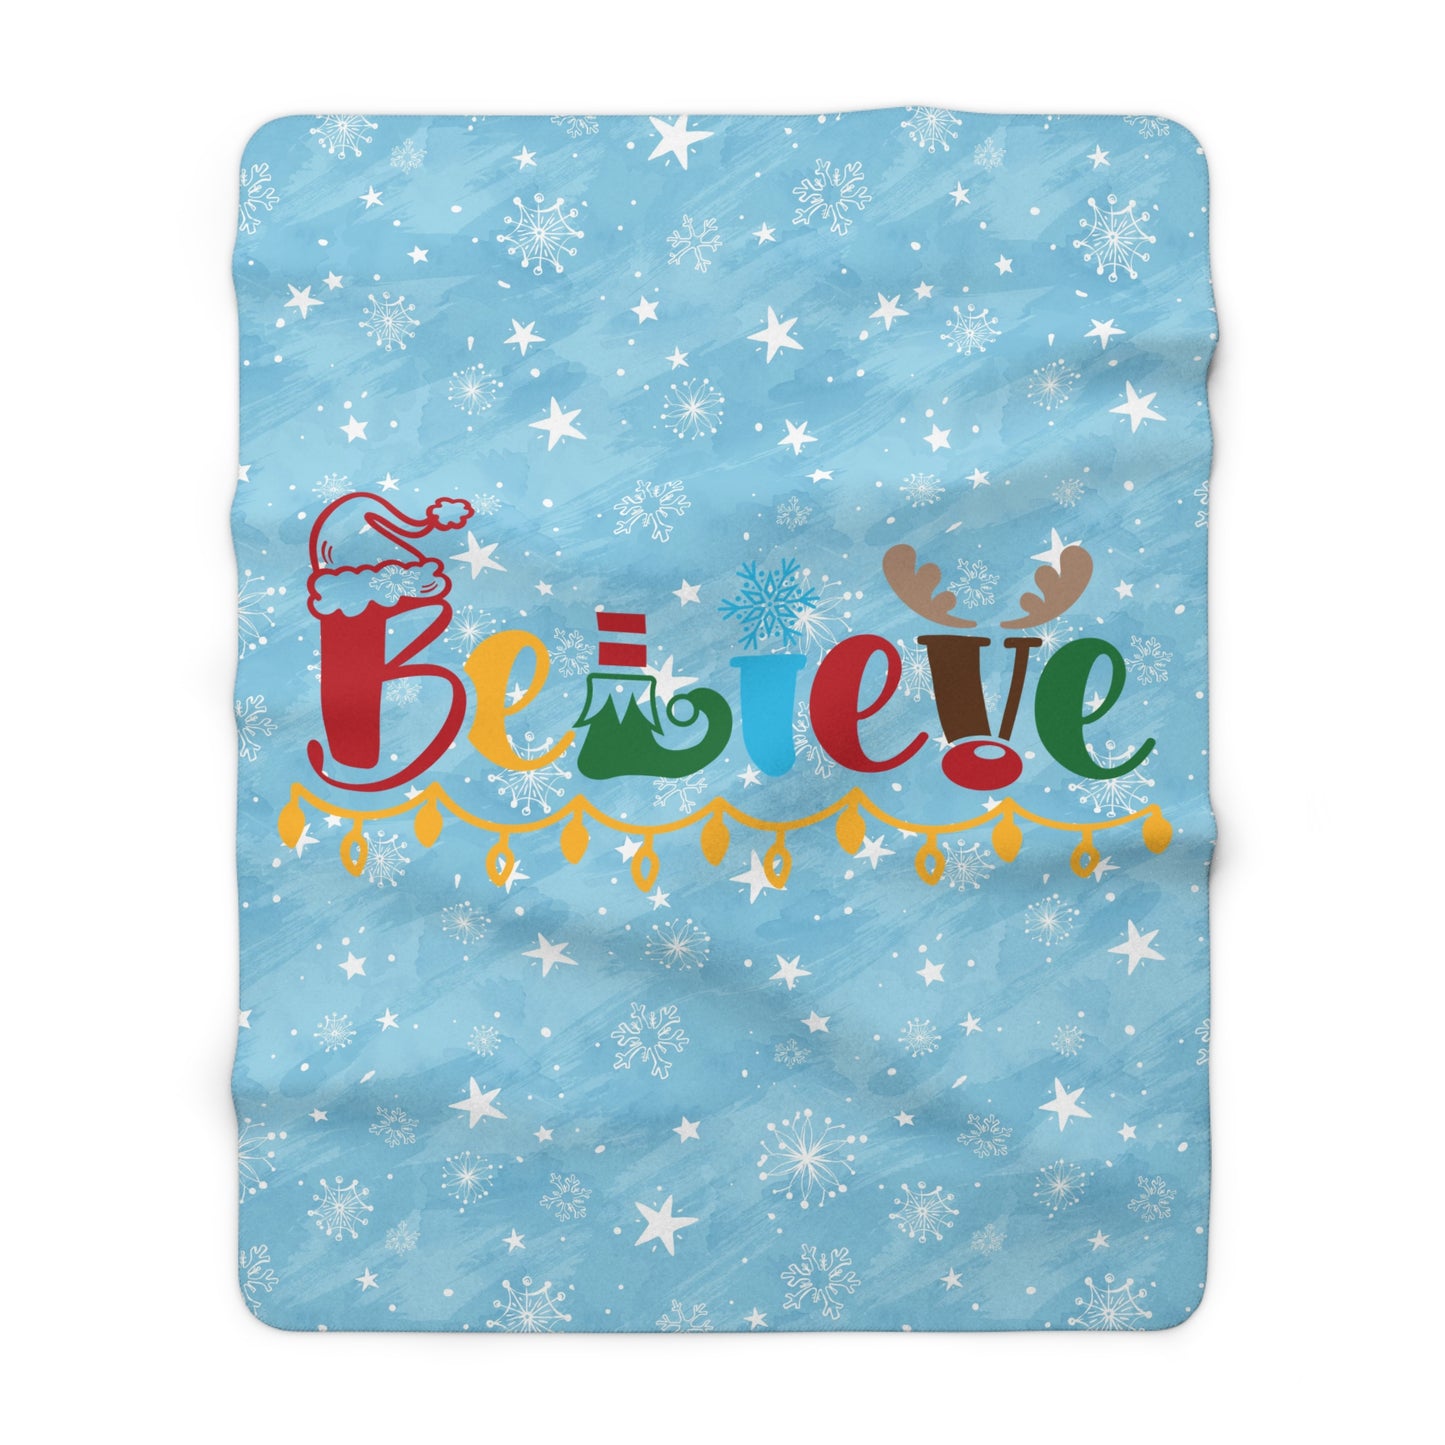 Believe - Santa hat, Elf, Reindeer, Snowflake - Funny Christmas - Sherpa Fleece Blanket